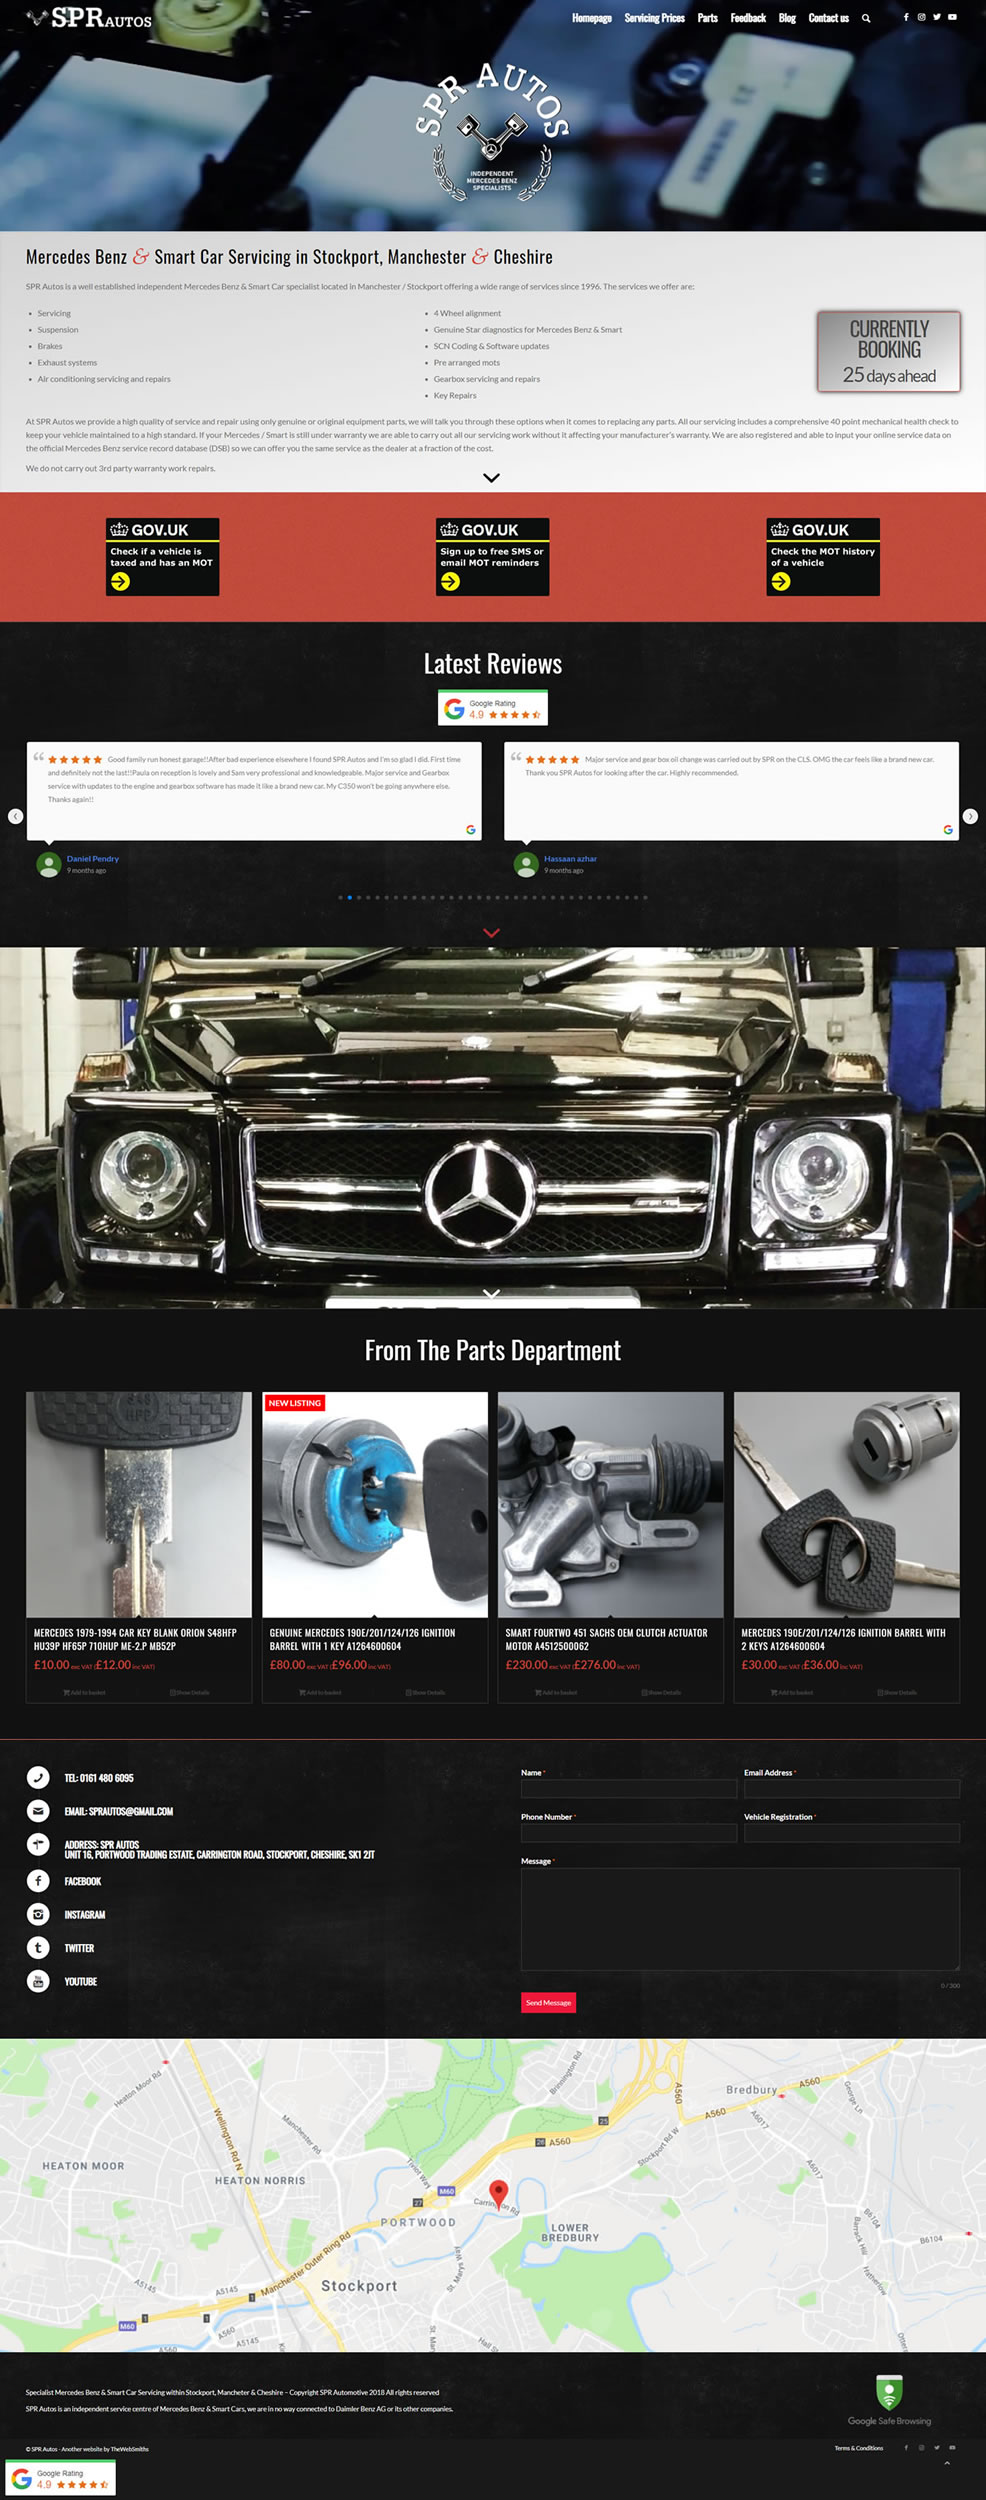 A new website for SPR Autos